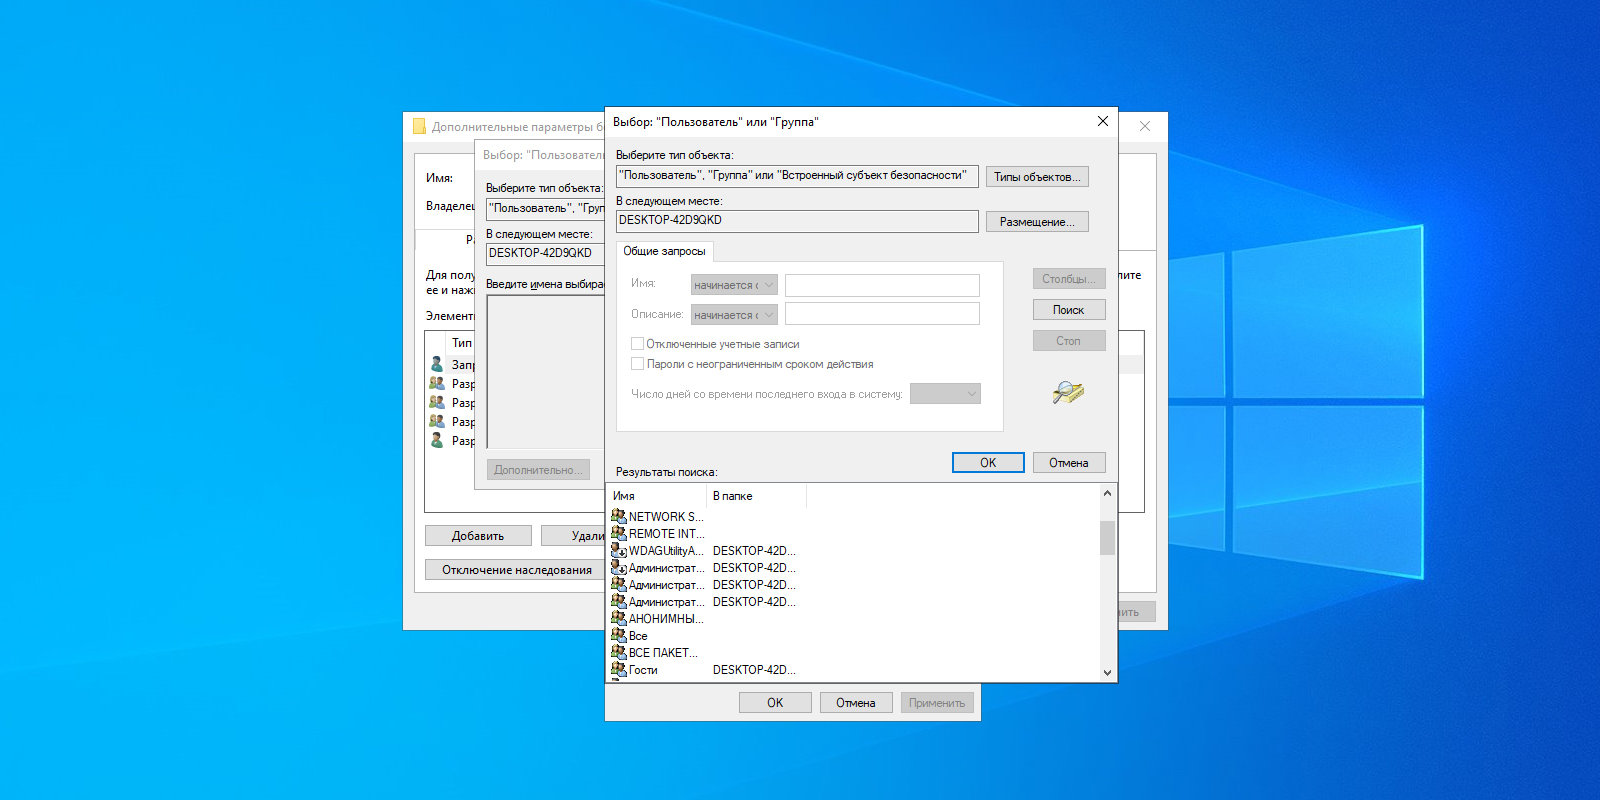 Не отображаются файлы в папке Windows, но файлы есть? — Хабр Q&A